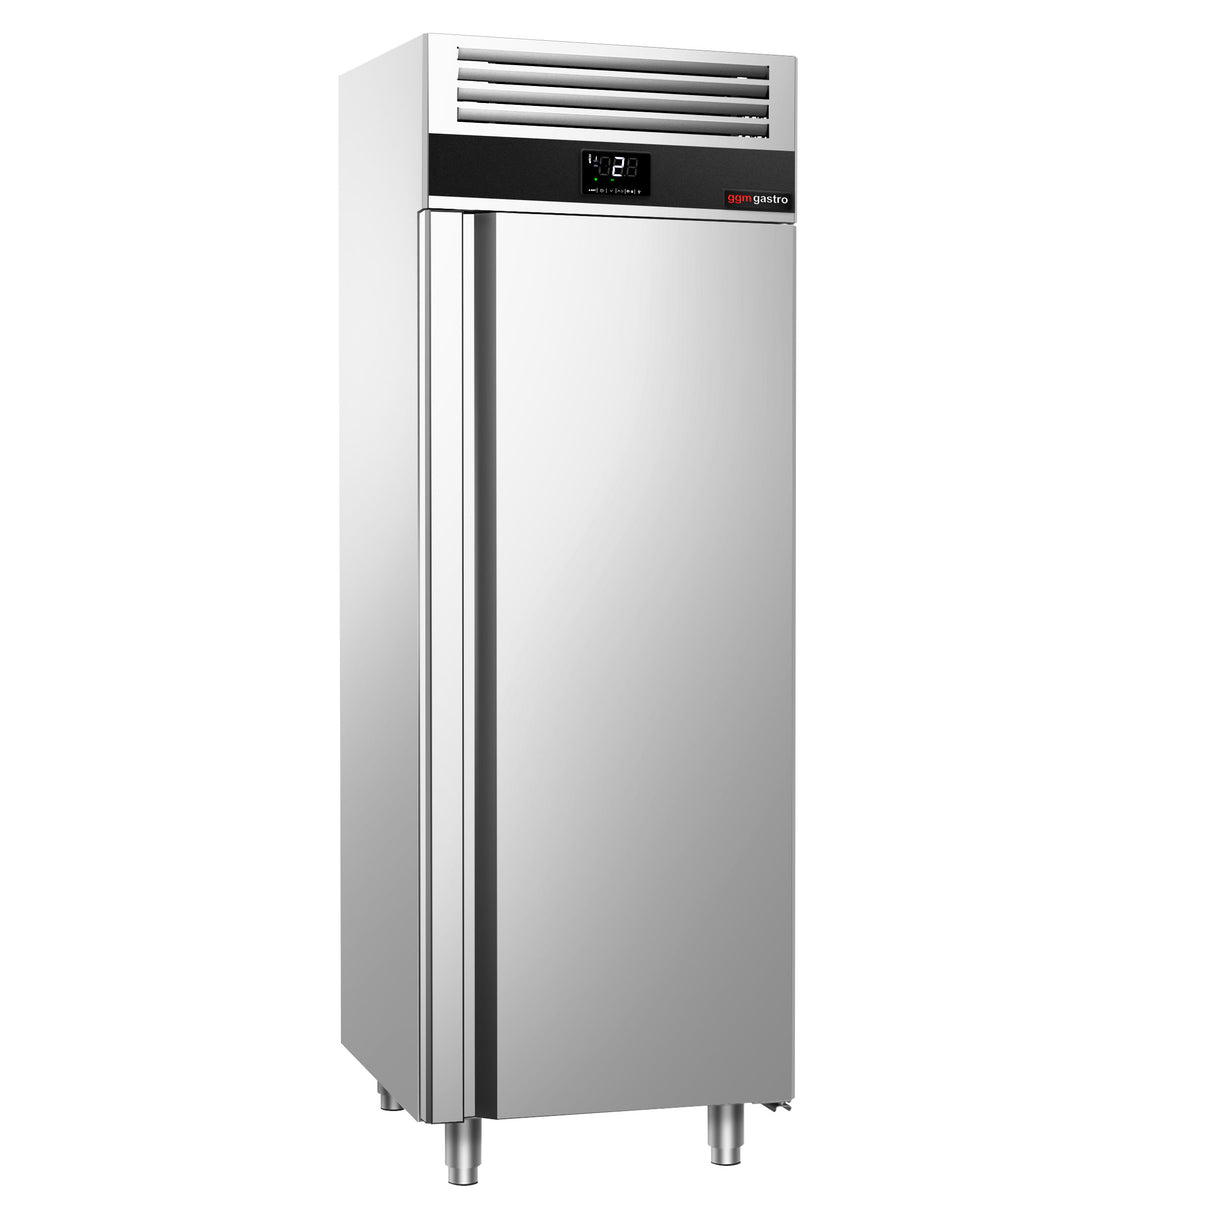 Kjøleskap - 0,7 x 0,81 m - 700 liter - med 1 dør i rustfritt stål